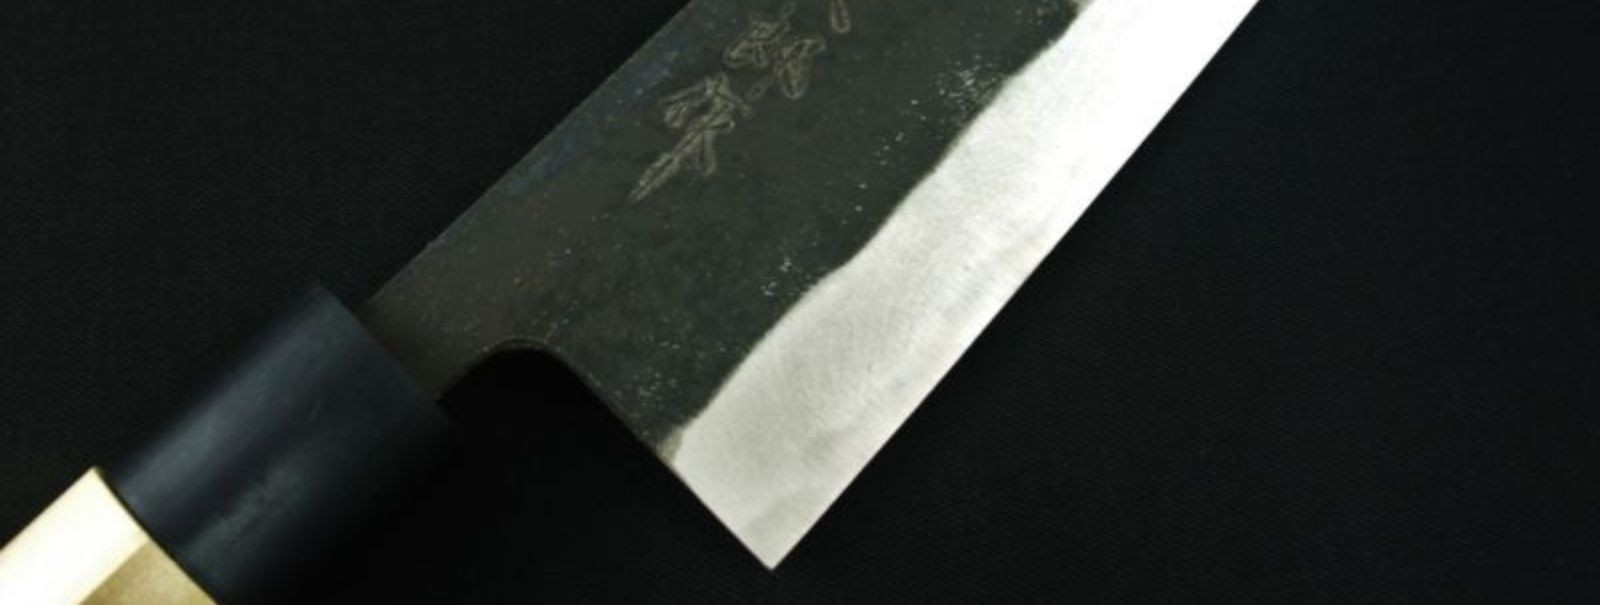 Jaapani kööginoad on tuntud oma kõrge kvaliteedi, teravuse ja vastupidavuse poolest. Need nuga on valmistatud traditsiooniliste meetodite järgi, mis tagavad ter